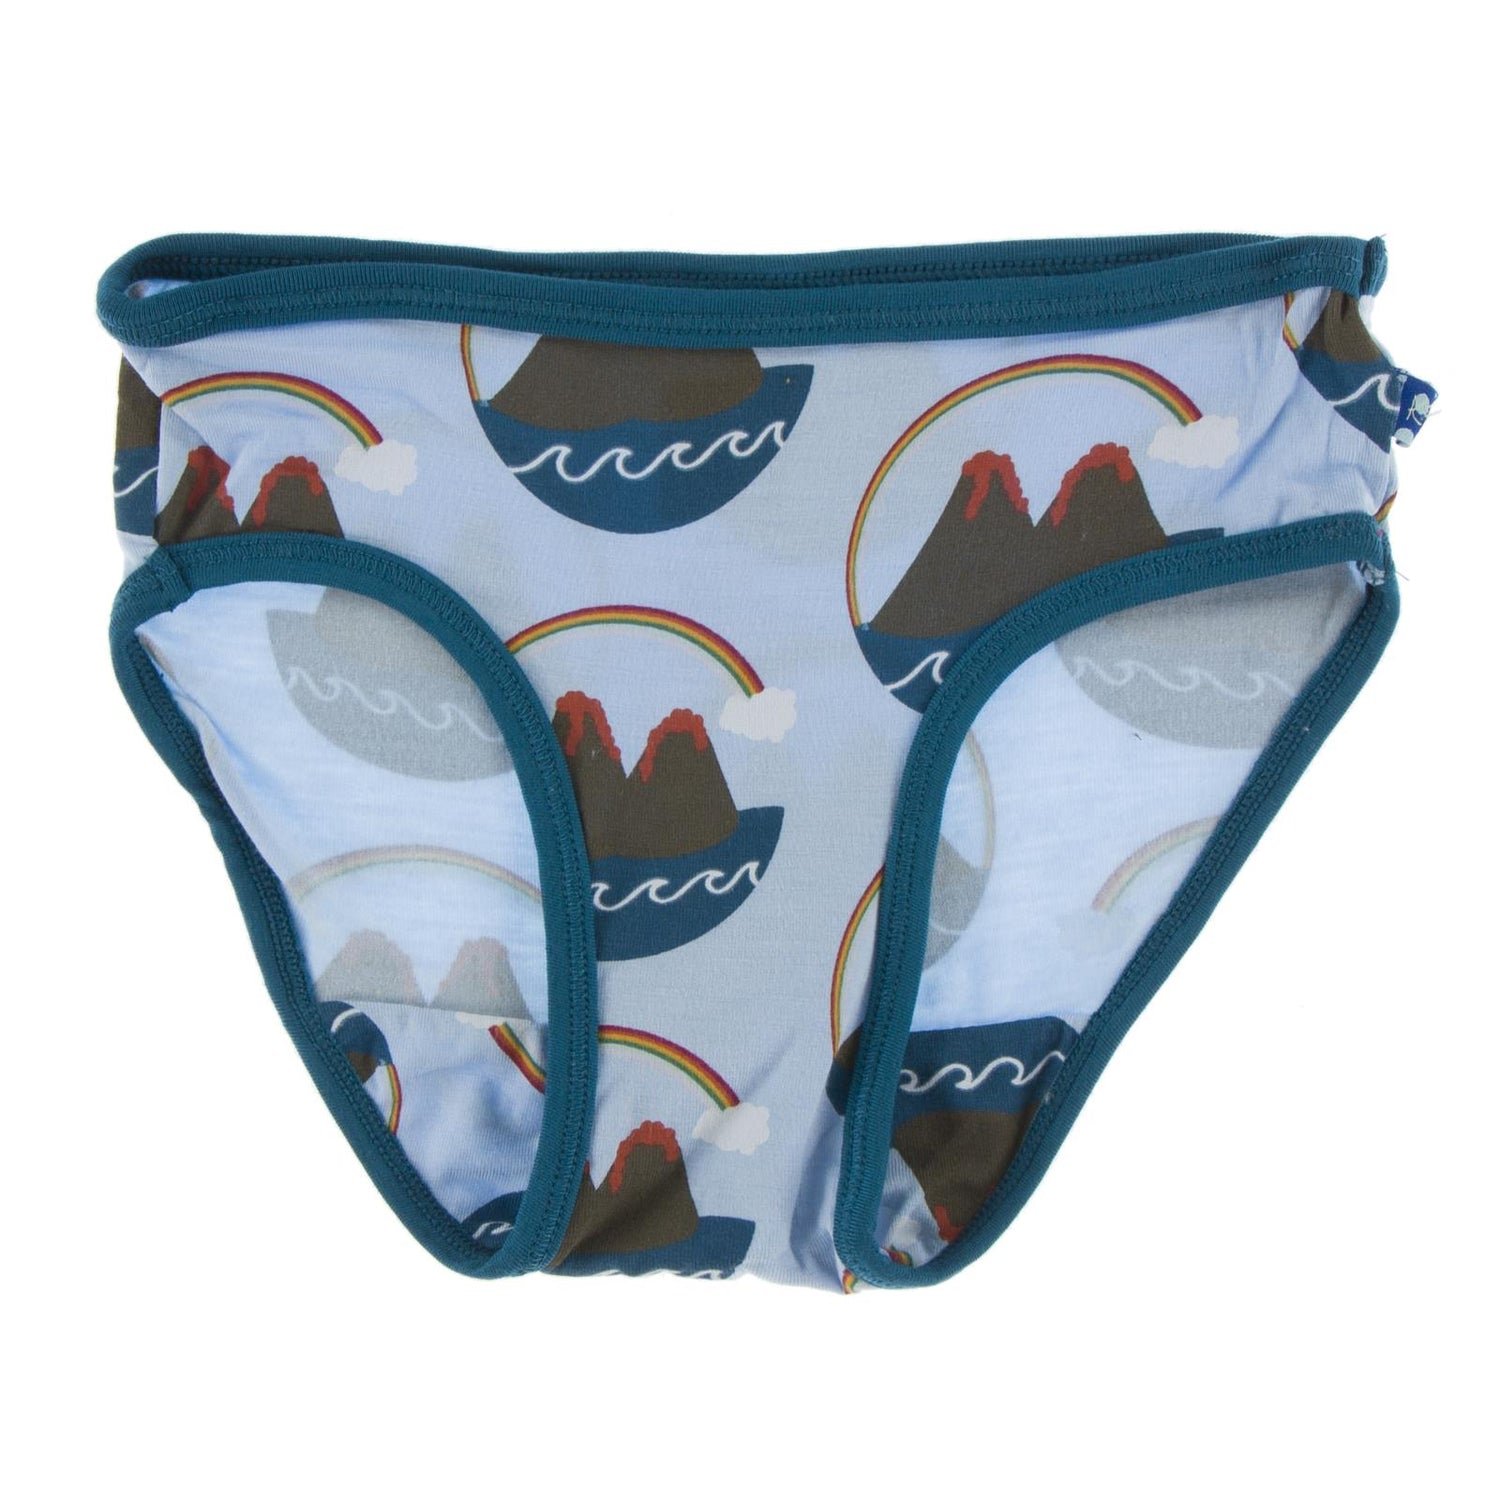 Print Underwear in Pond Volcano with Heritage Blue Trim